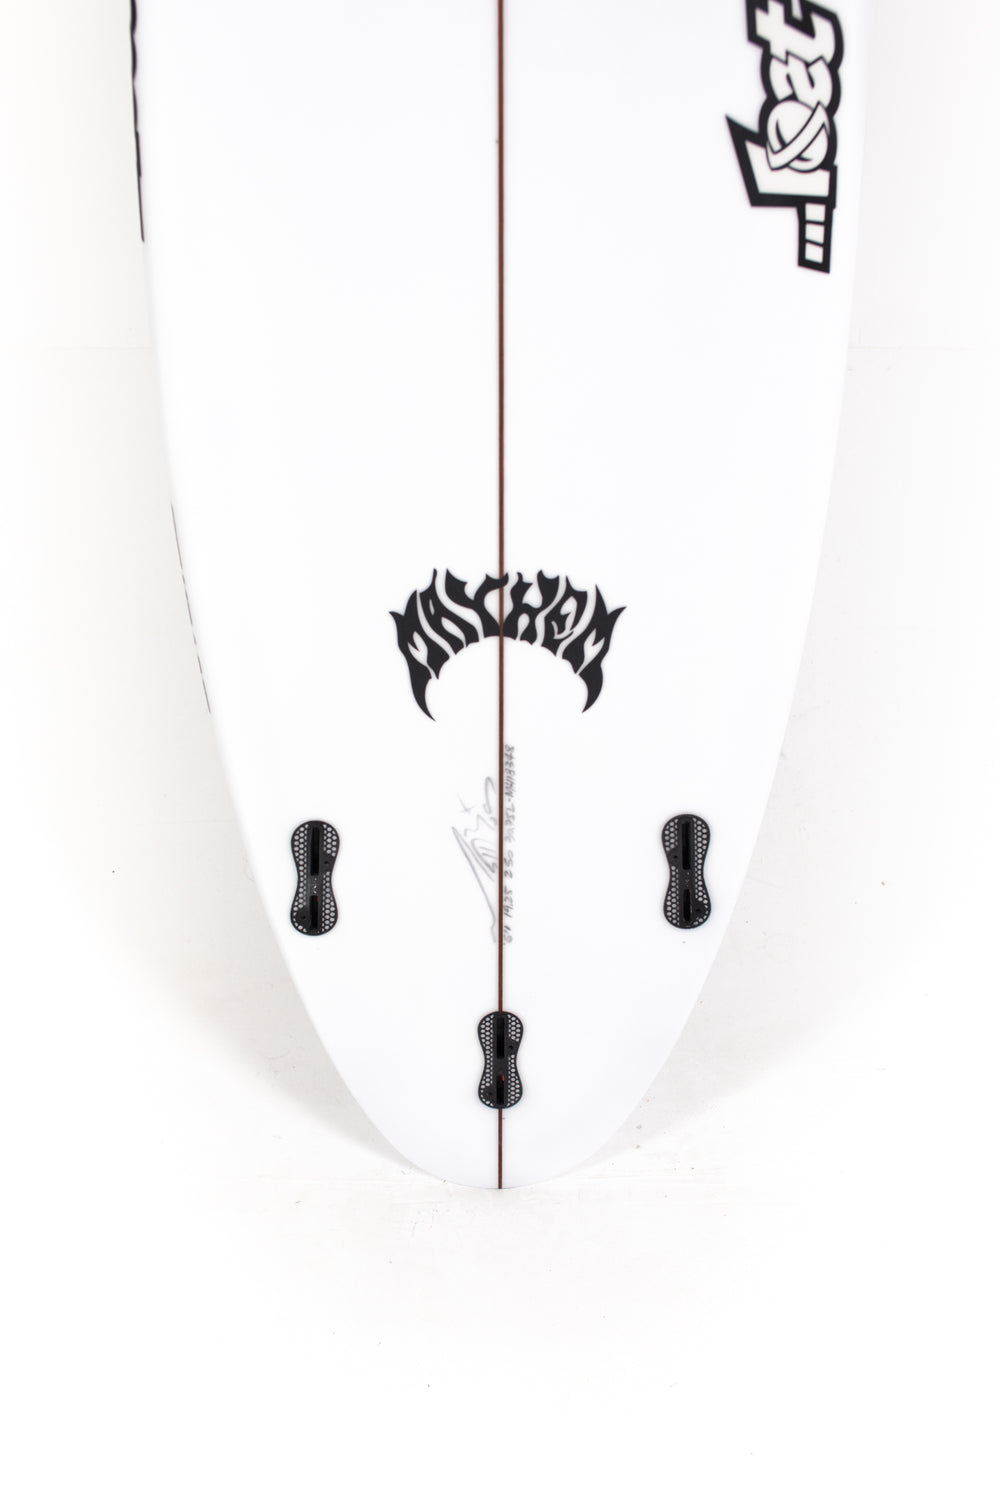 Lost Surfboards - DRIVER 3.0 by Matt Biolos - 6'1